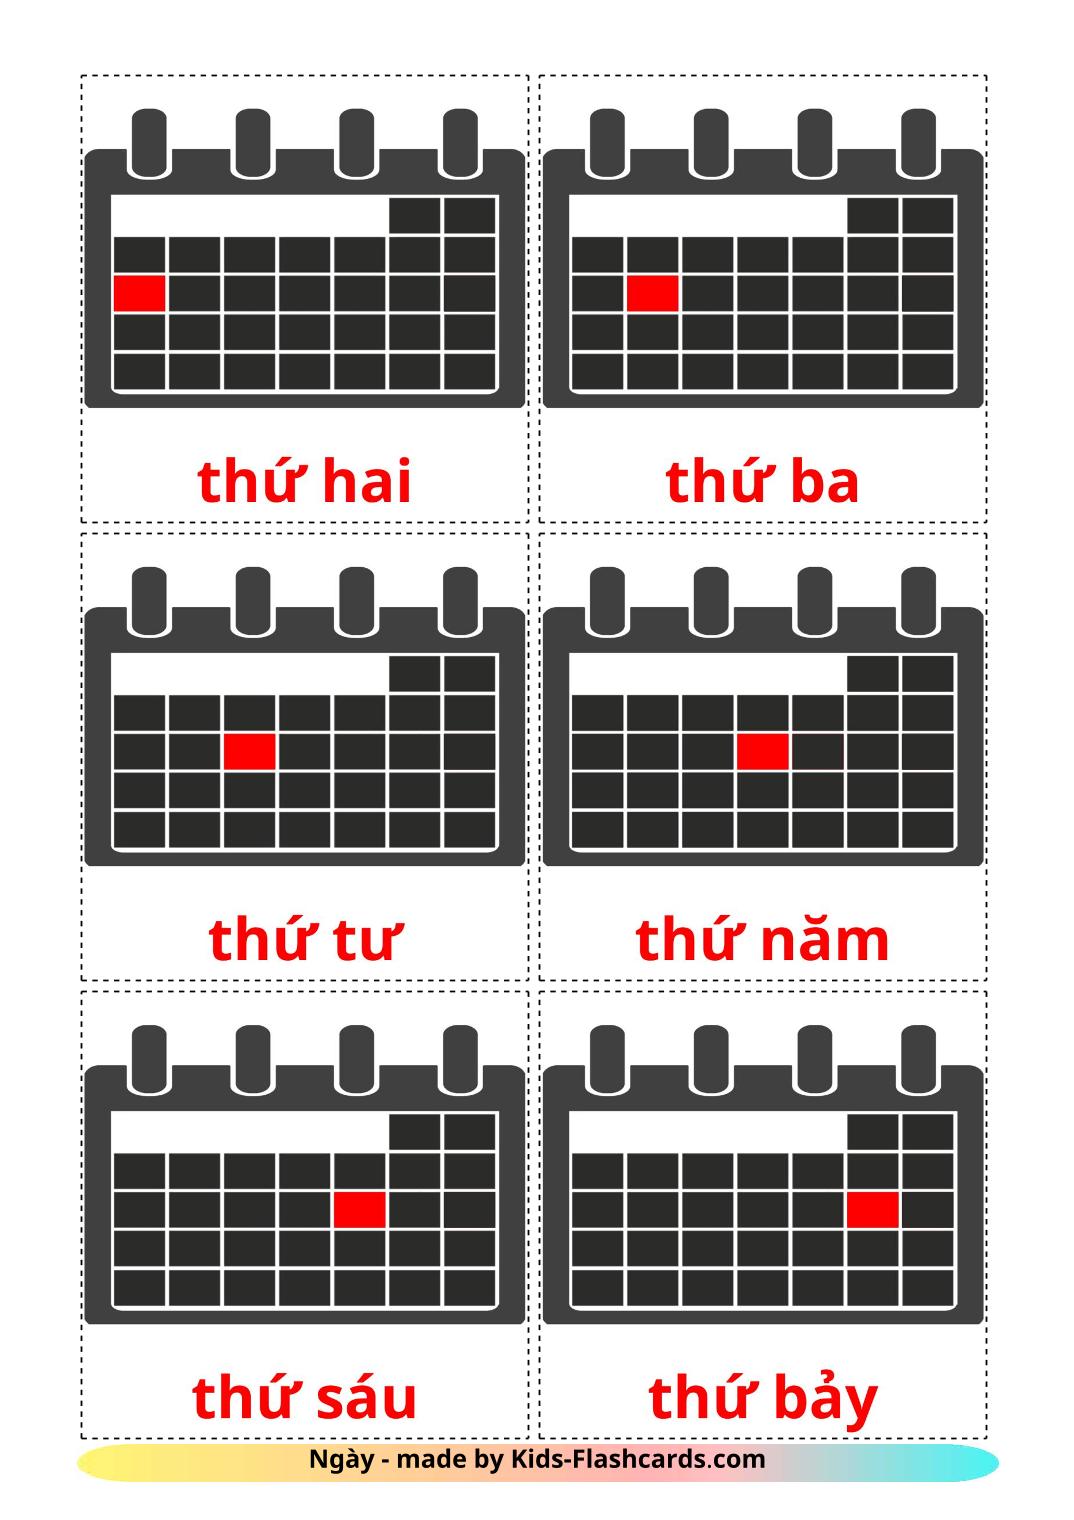 Días de la semana - 12 fichas de vietnamita para imprimir gratis 